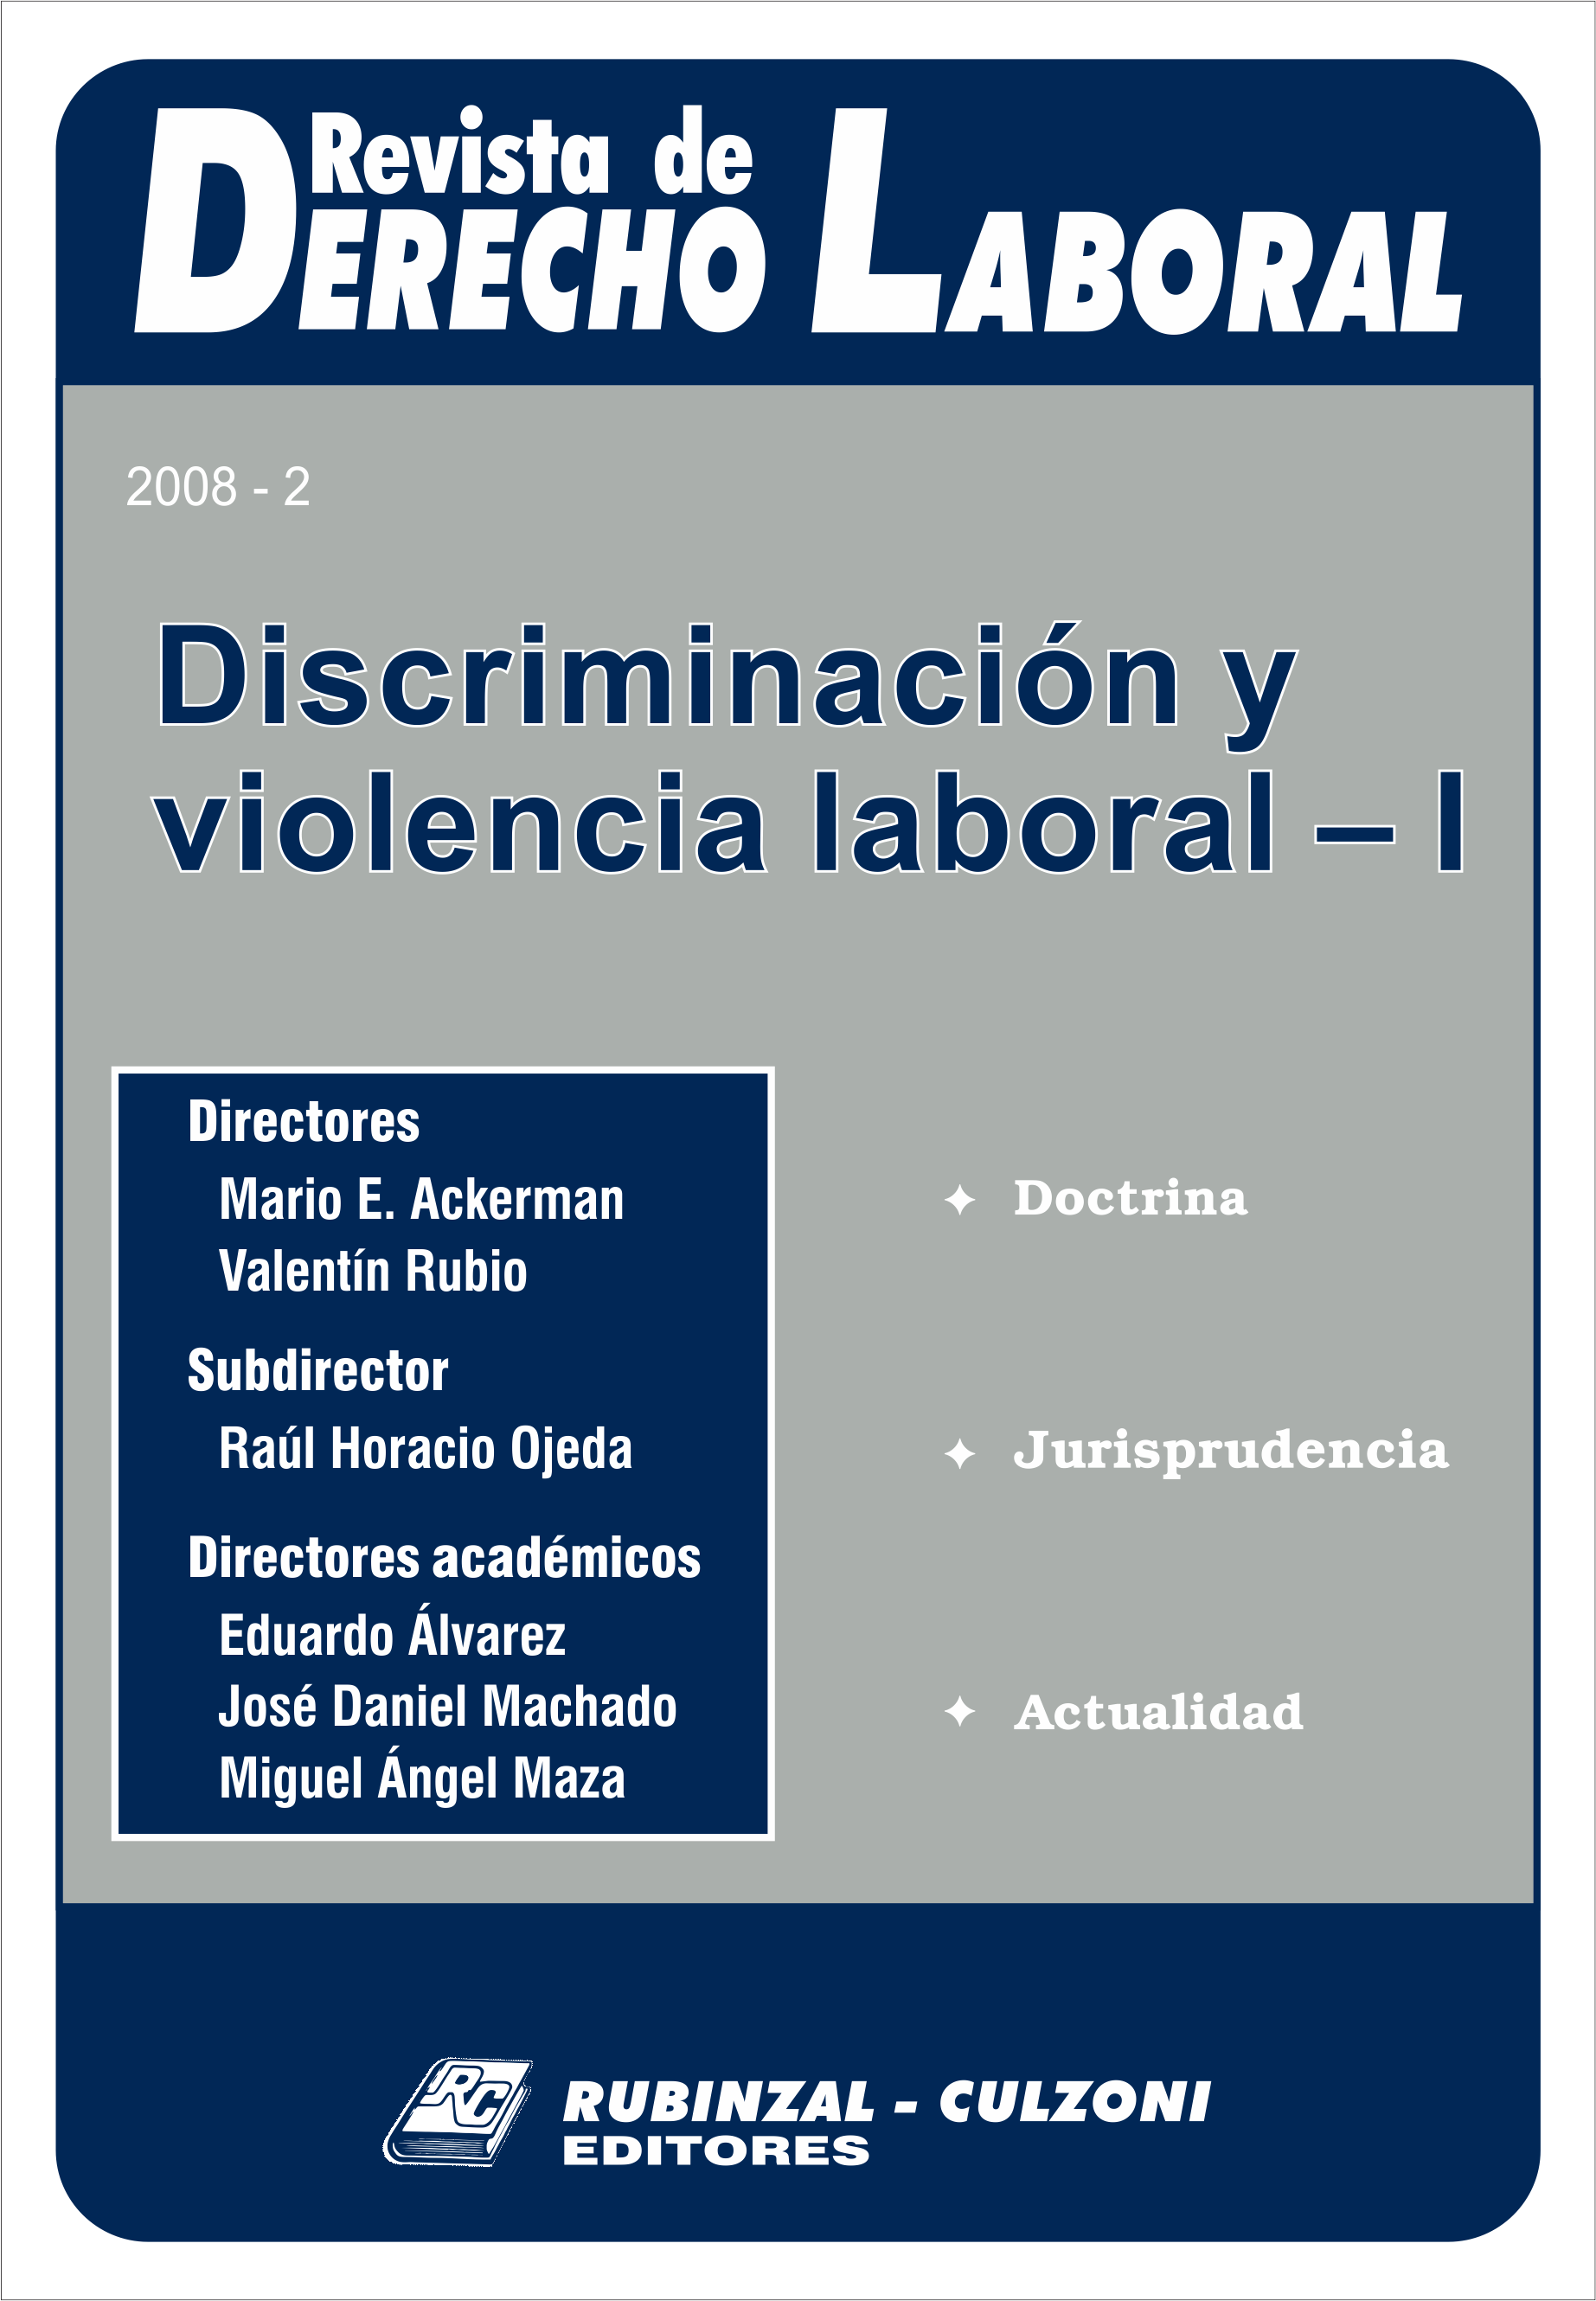 Revista de Derecho Laboral - Discriminación y violencia laboral - I